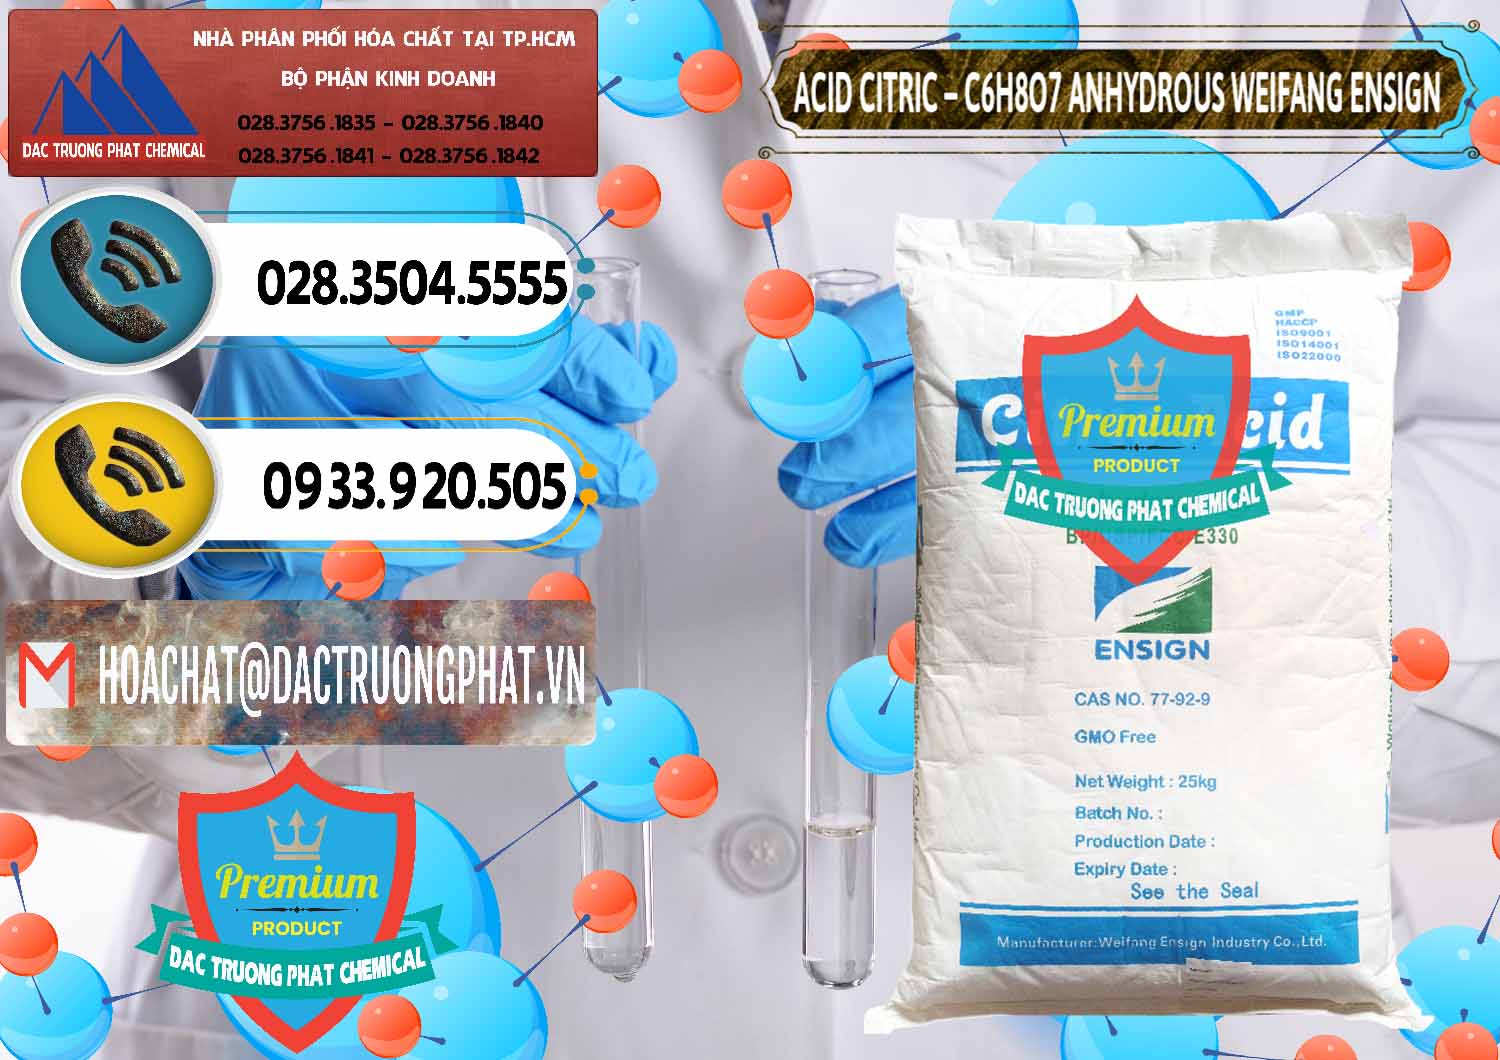 Công ty chuyên phân phối _ bán Acid Citric - Axit Citric Khan Anhydrous Weifang Trung Quốc China - 0008 - Công ty phân phối - bán hóa chất tại TP.HCM - hoachatdetnhuom.vn